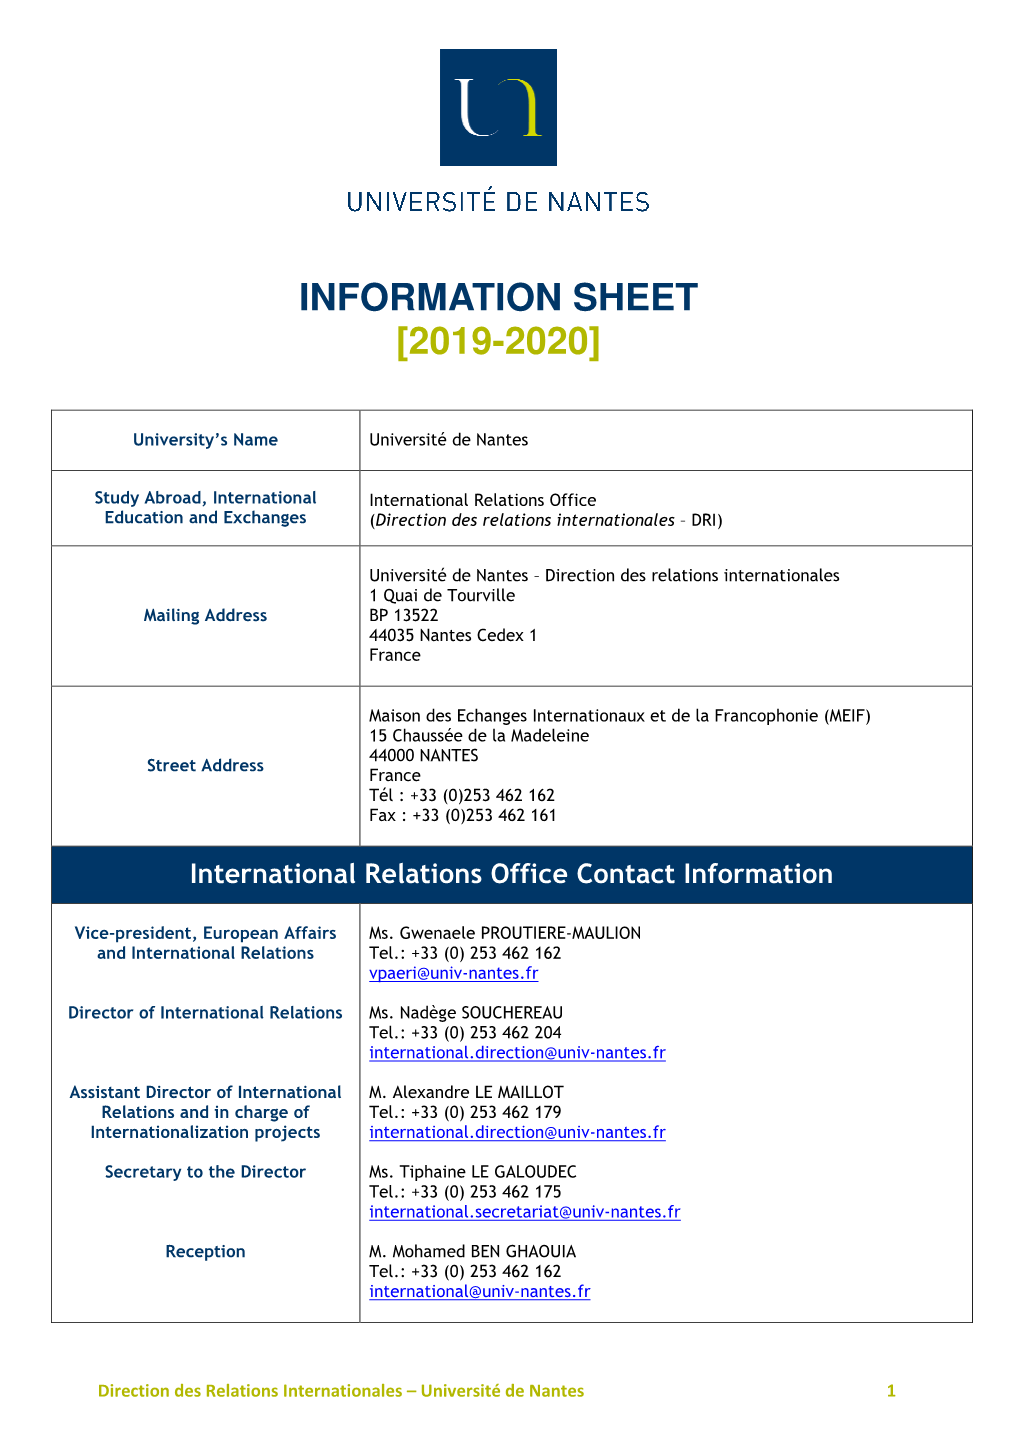 2019-2020 Information Sheet